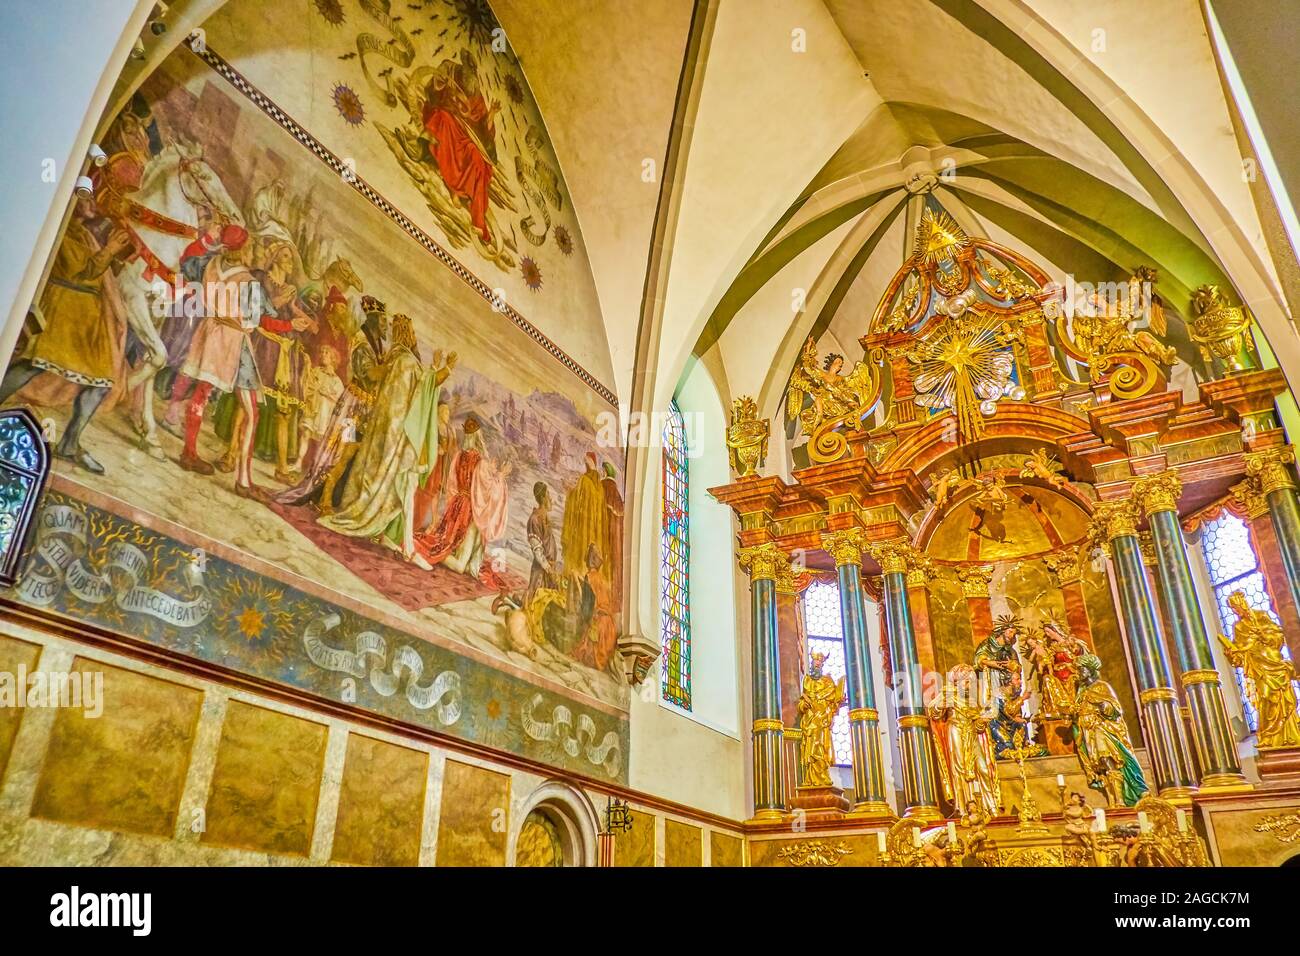 GMUNDEN, Austria - 22 febbraio 2019: l'incredibile decorazione della chiesa parrocchiale con un bellissimo altare e il grande affresco raffigurante la Bibbia della scena, Foto Stock